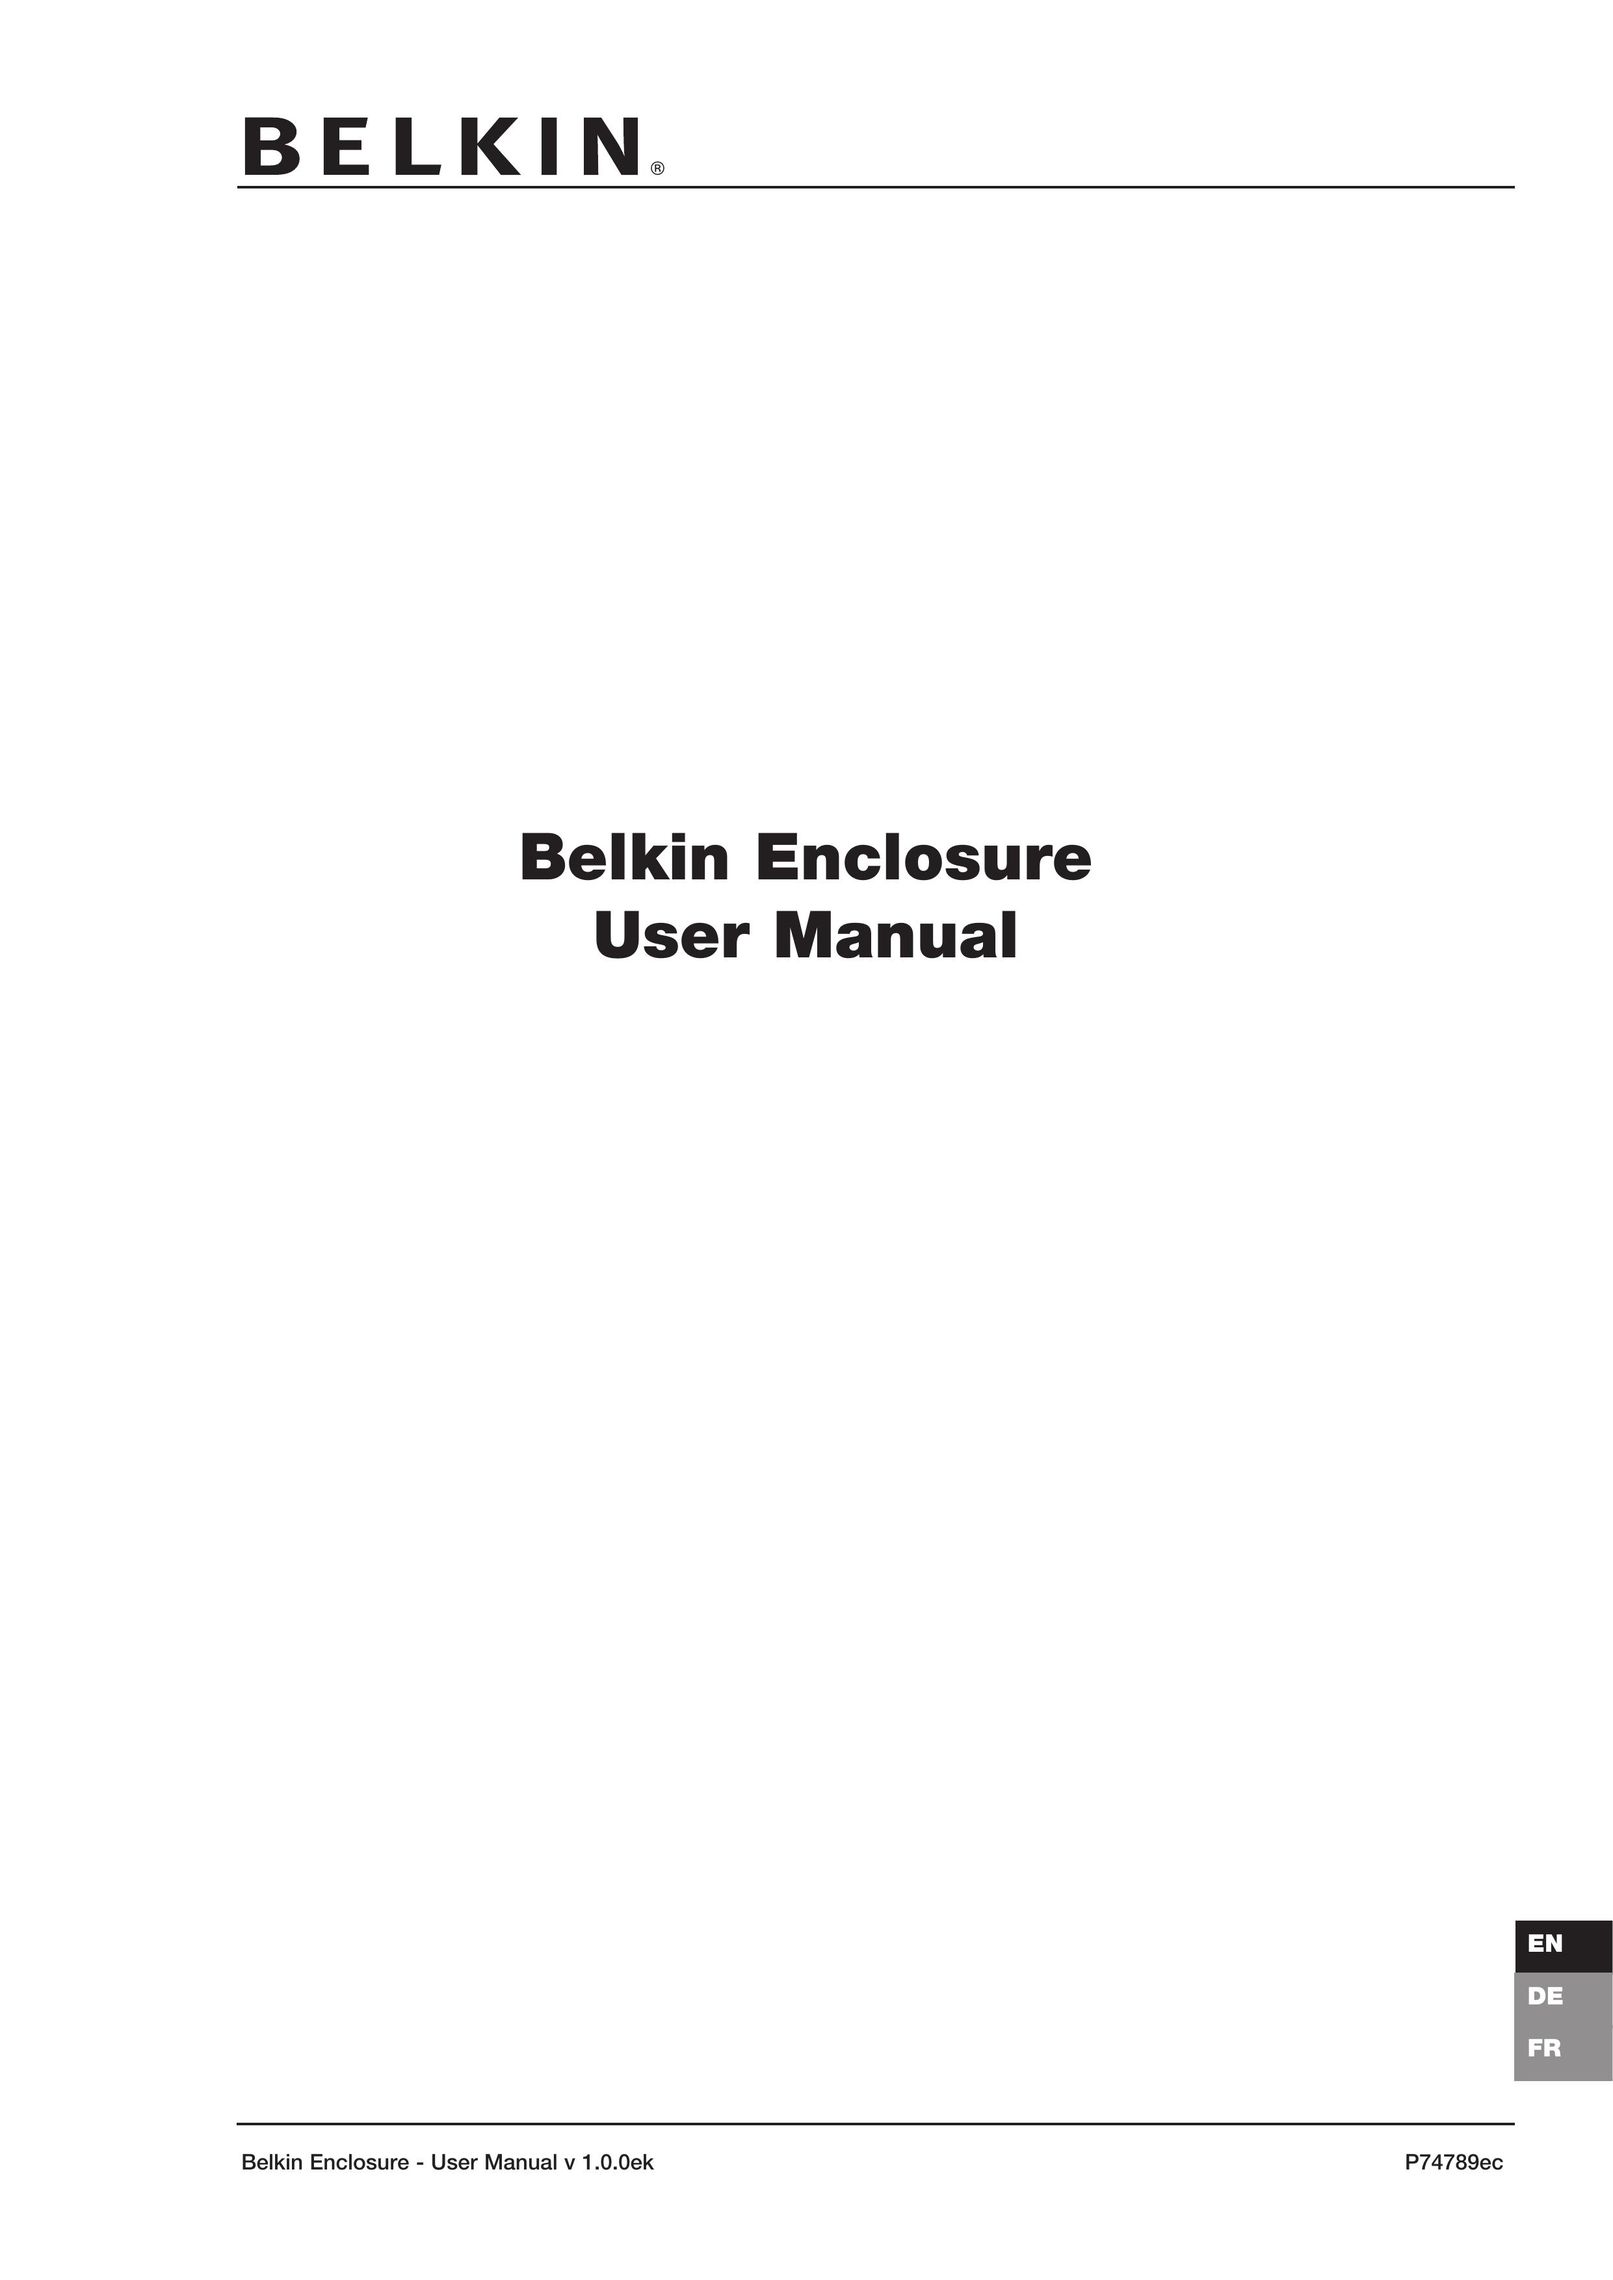 Belkin 42U Network Card User Manual